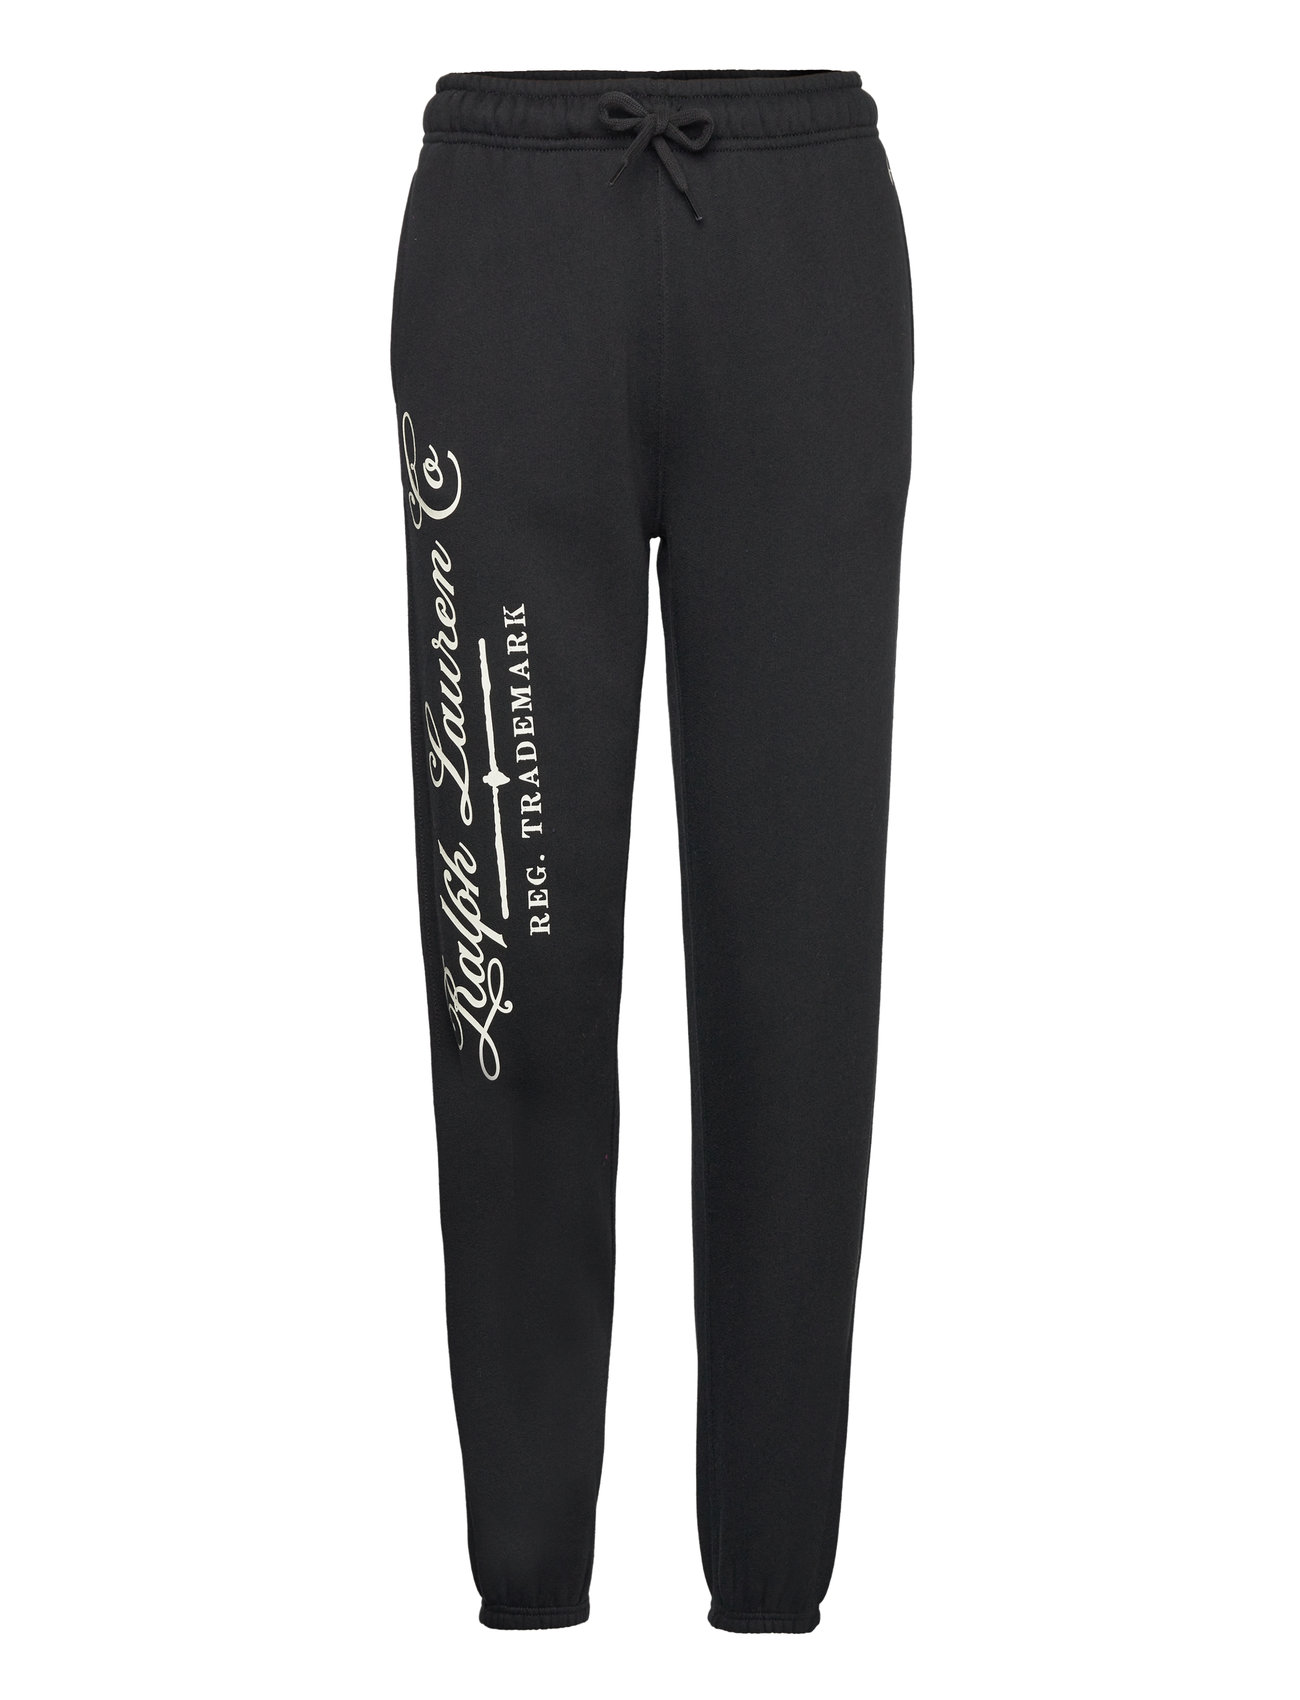 Logo Fleece Athletic Ankle Pant Bottoms Sweatpants Black Polo Ralph Lauren